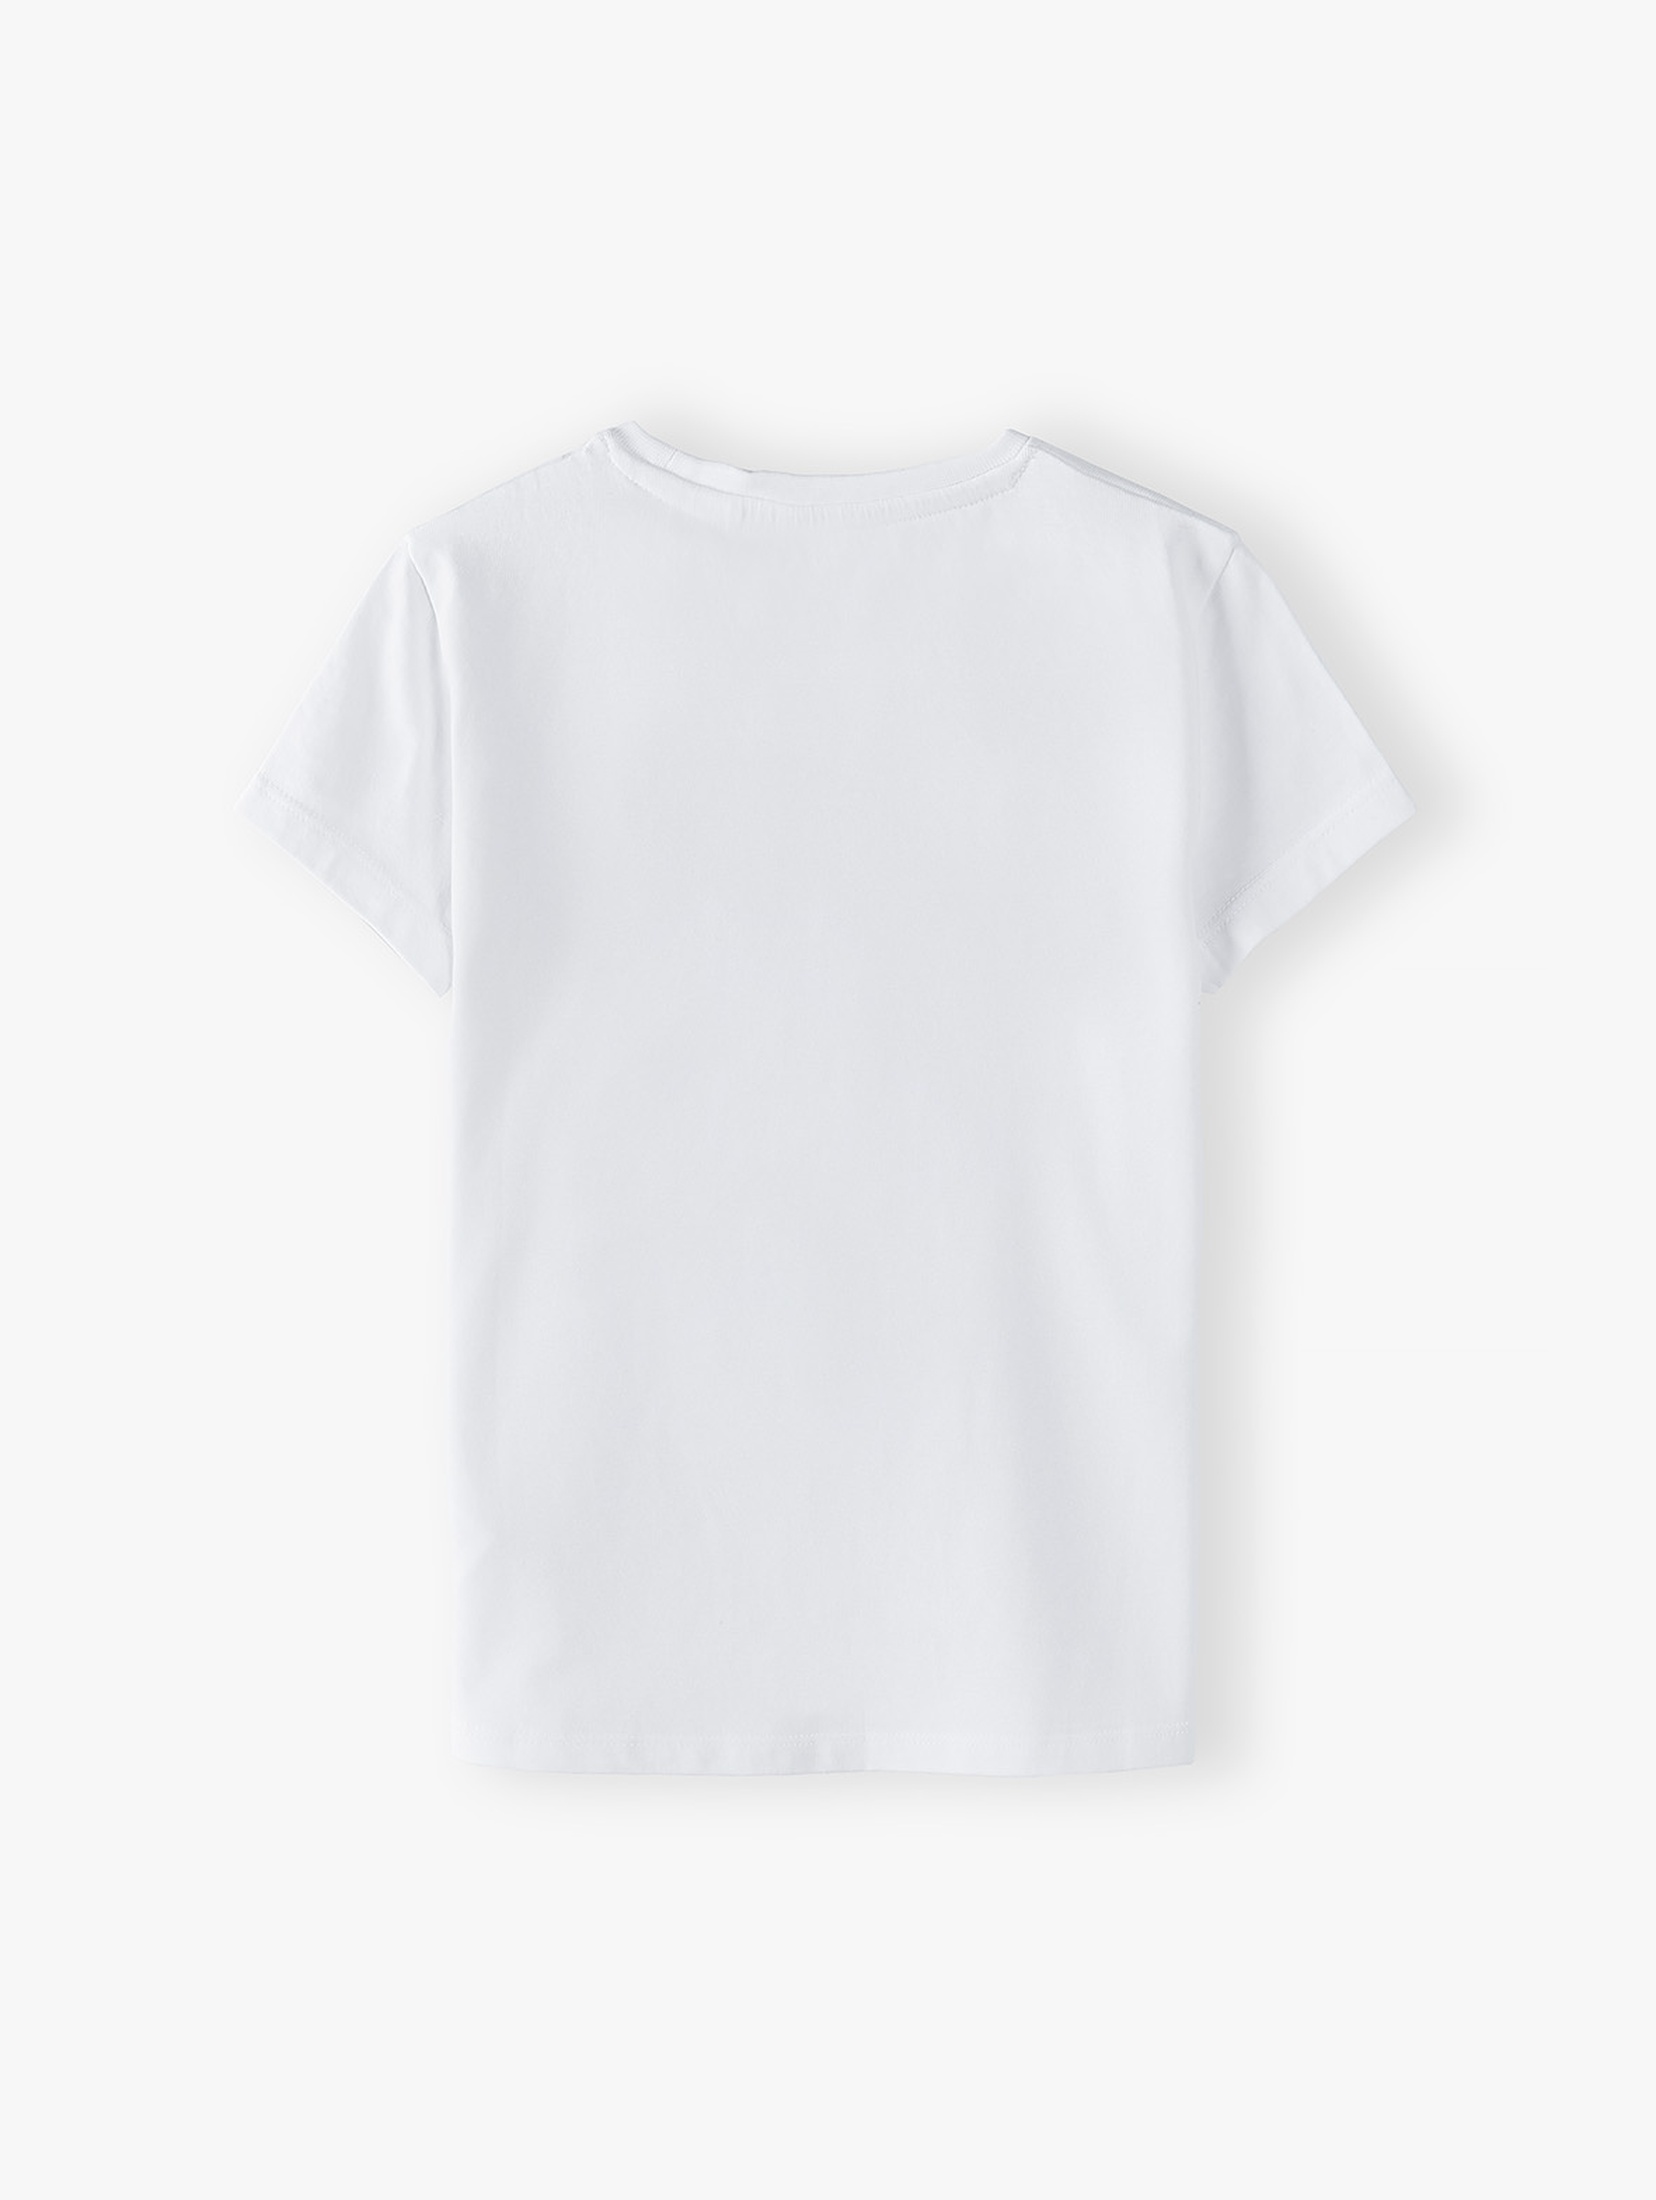 Biały t-shirt dziewczęcy z napisem - Duma dziadków